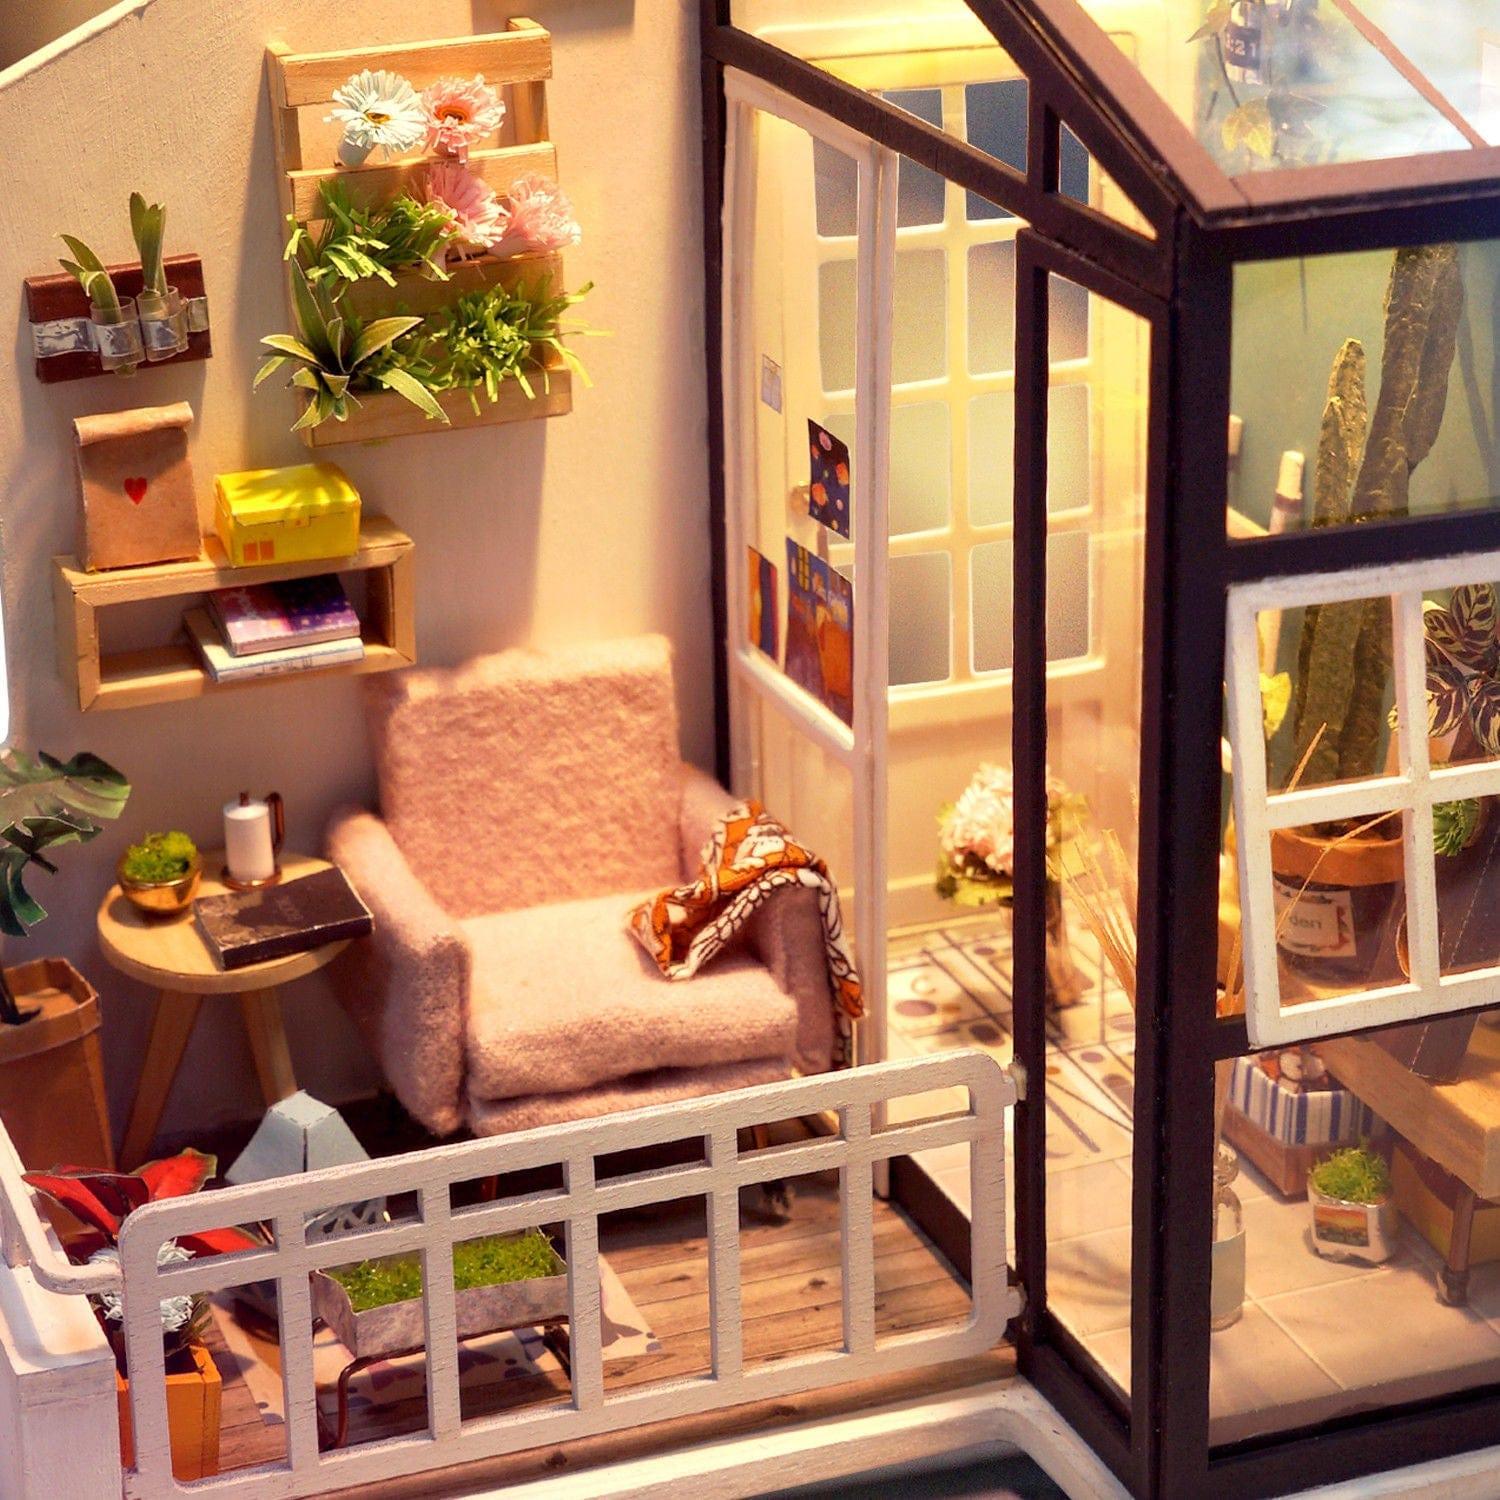 Shop Suzy DIY Miniature Dollhouse Kit Mademoiselle Home Decor